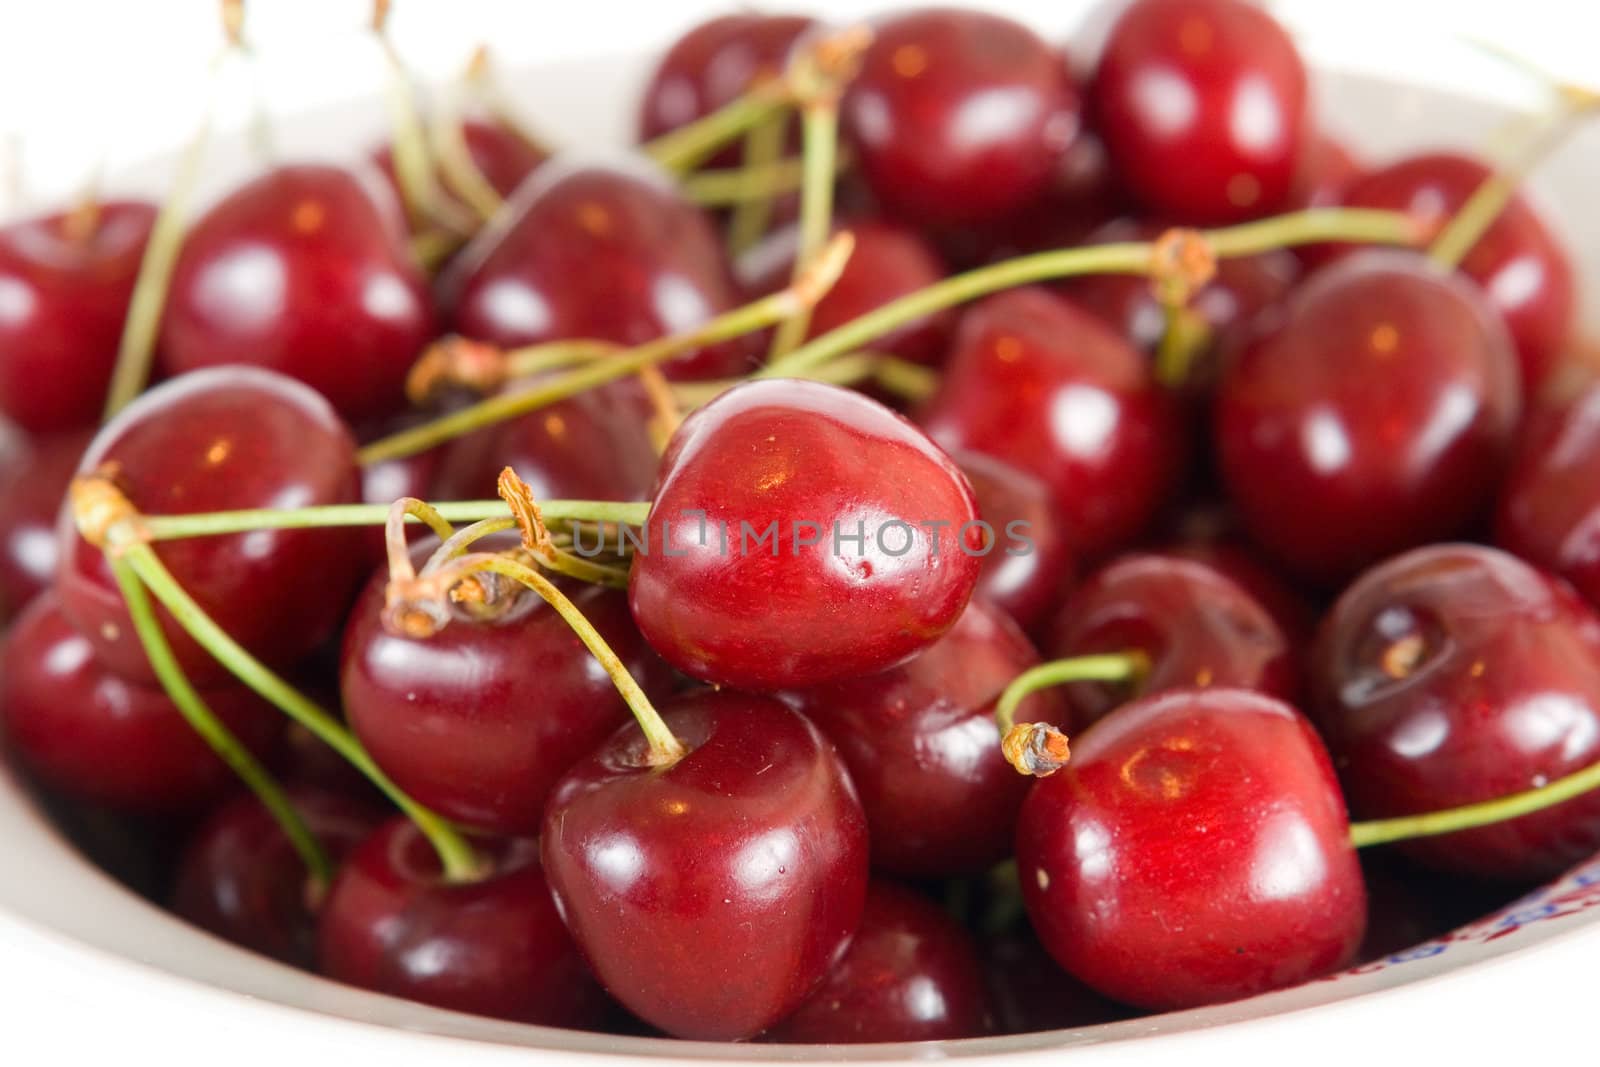 sweet cherries on plate